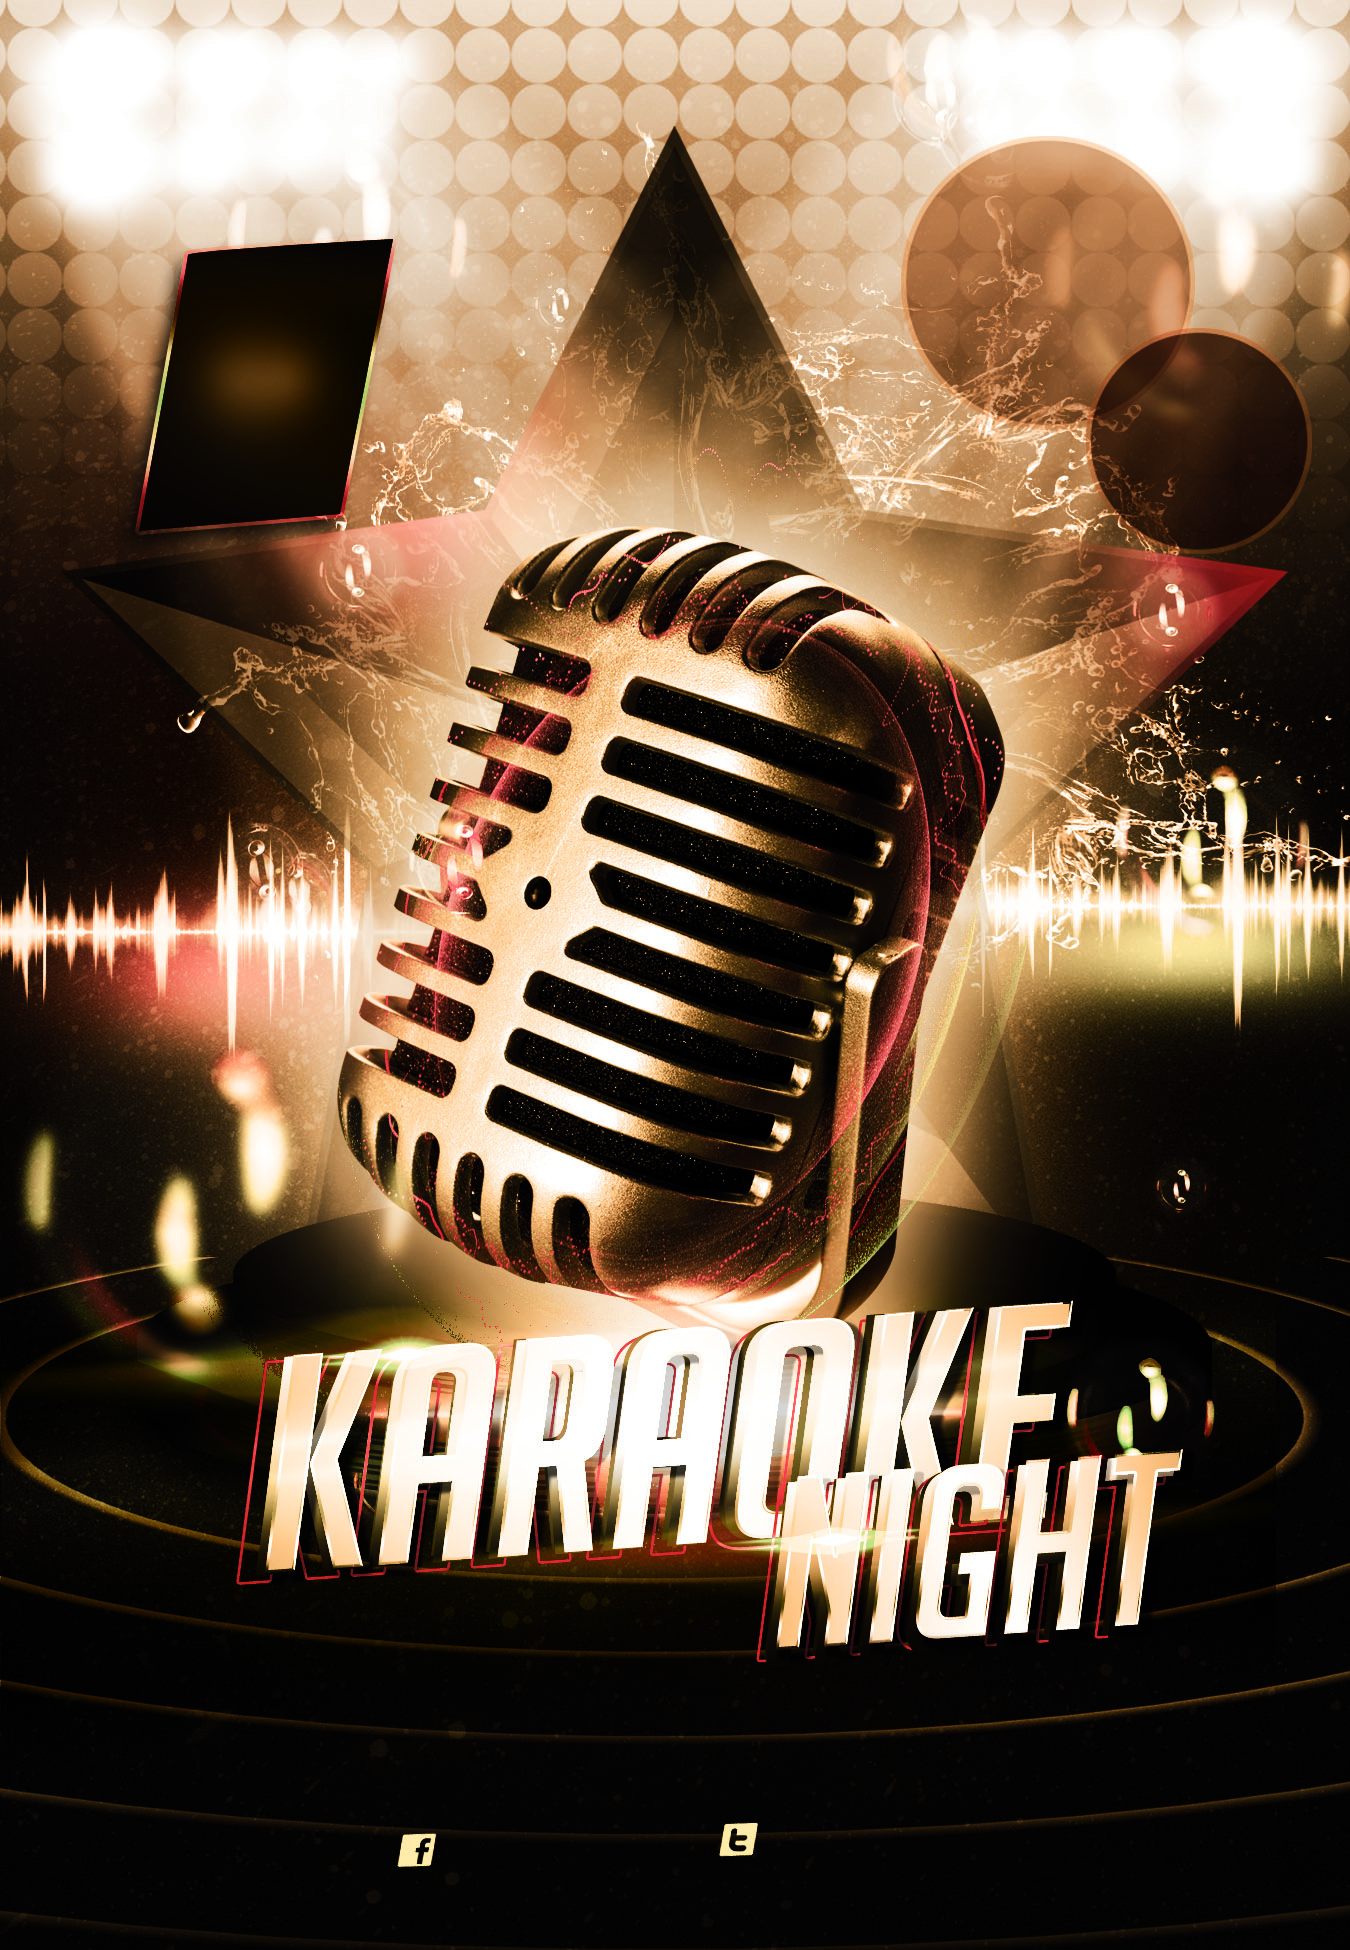 karaoke night party - Instant Karma är ett coverband blandat med svenska och irländska musiker. De spelar allt från klassiker från 50-talet till dagens hits, blandat med svenska och irländska traditionella låtar.